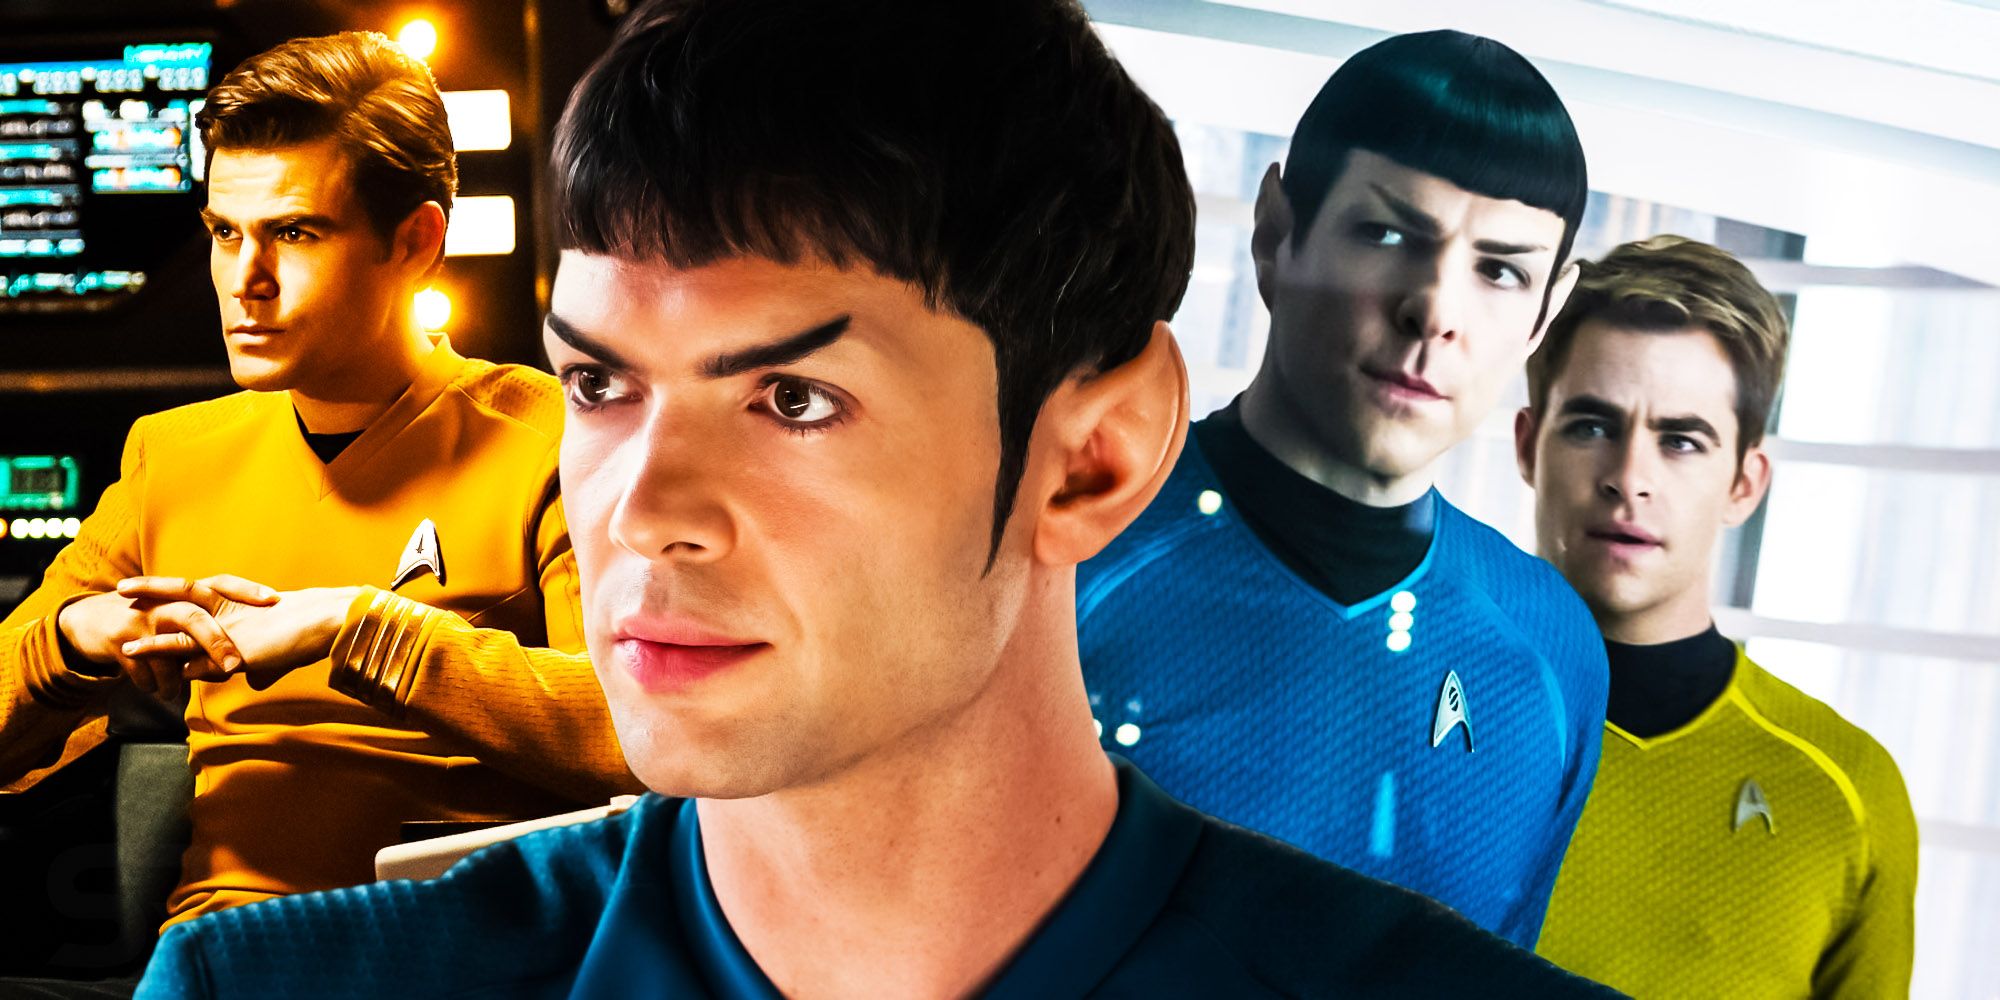 Star trek kelvin timeline strange new worlds spock captain kirk